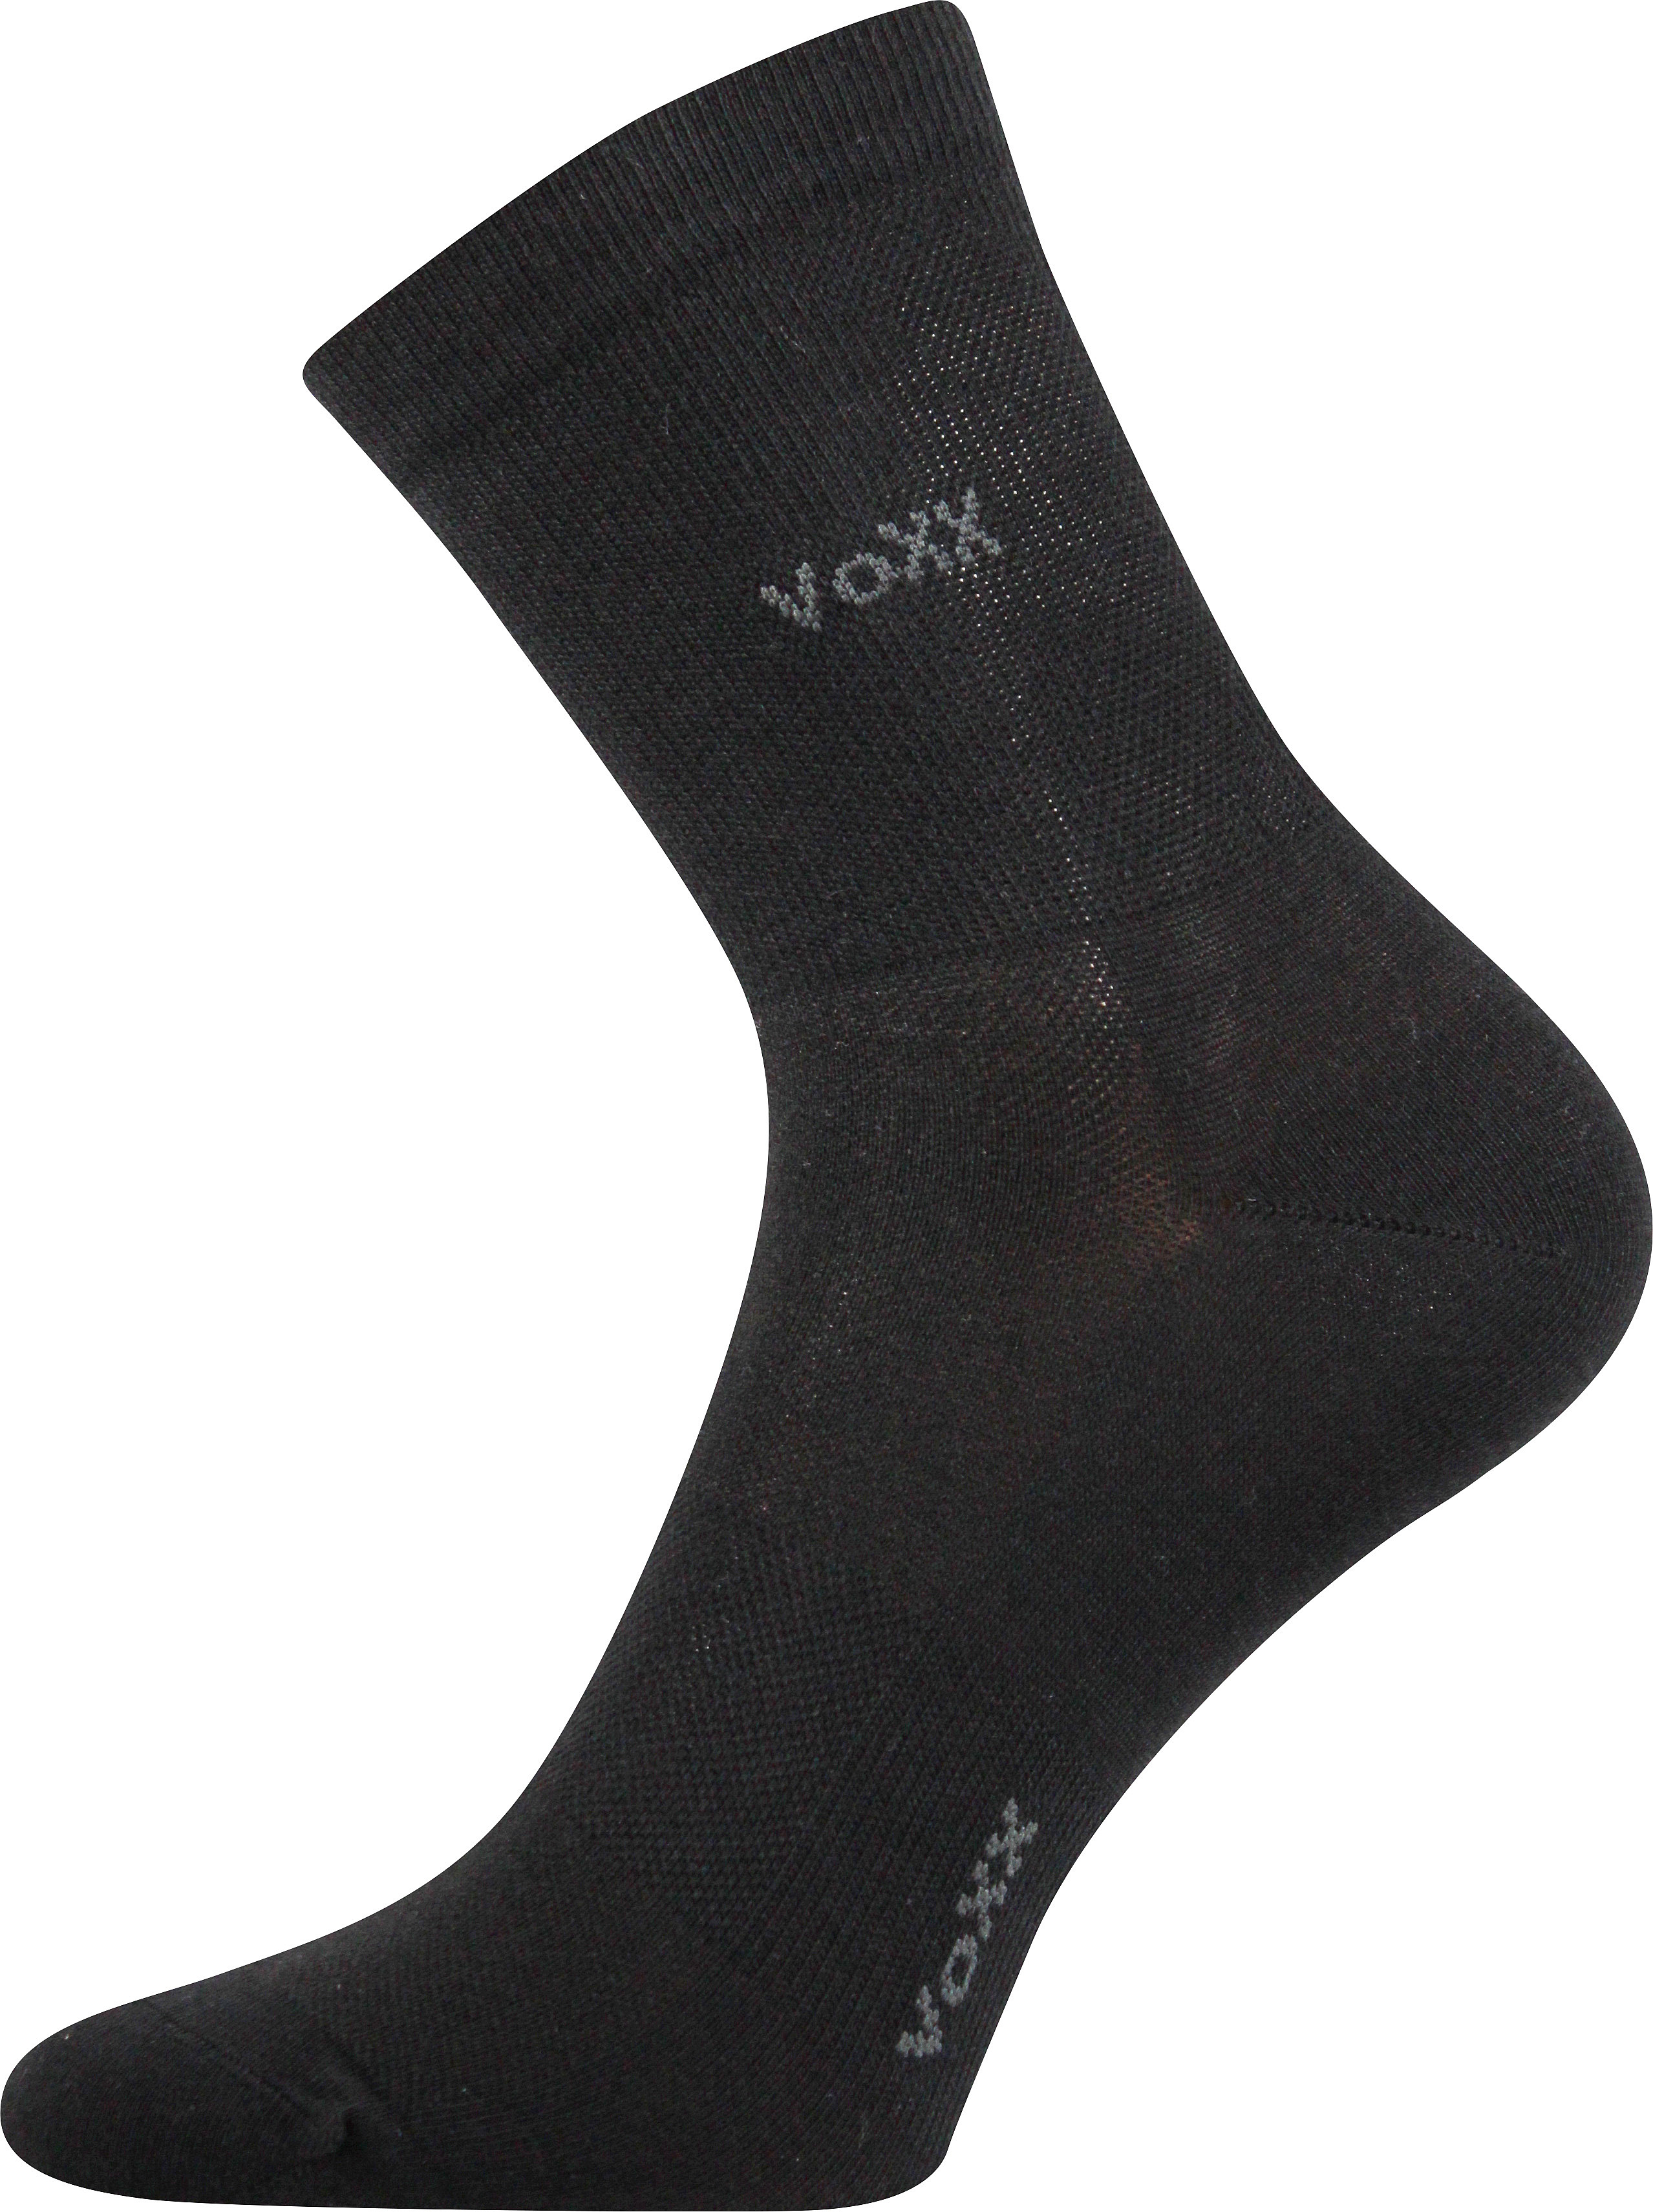 Ponožky sportovní Voxx Horizon - černé, 39-42